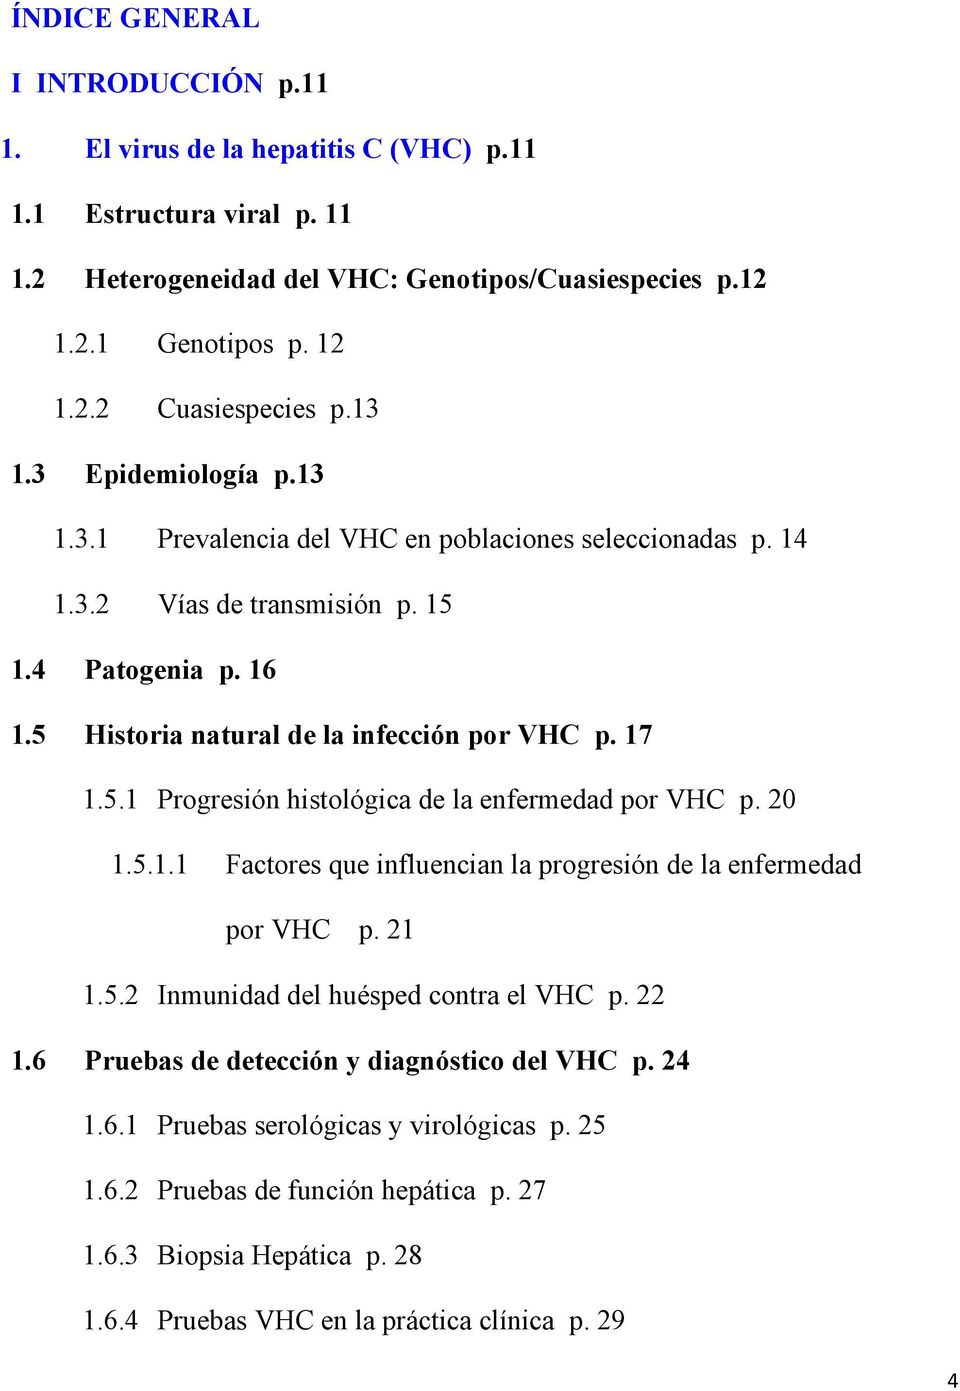 20 1.5.1.1 Factores que influencian la progresión de la enfermedad por VHC p. 21 1.5.2 Inmunidad del huésped contra el VHC p. 22 1.6 Pruebas de detección y diagnóstico del VHC p. 24 1.6.1 Pruebas serológicas y virológicas p.